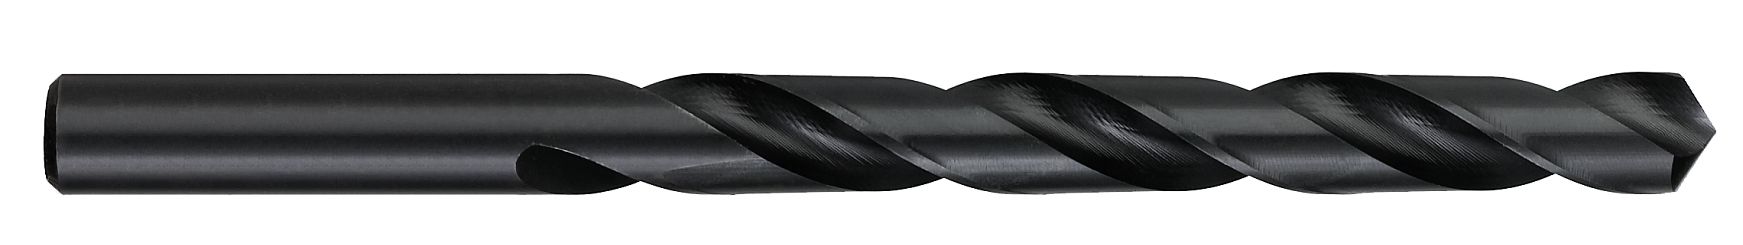 Drills-High Speed Steel-Jobber Length-118° Point-Black Oxide Finish